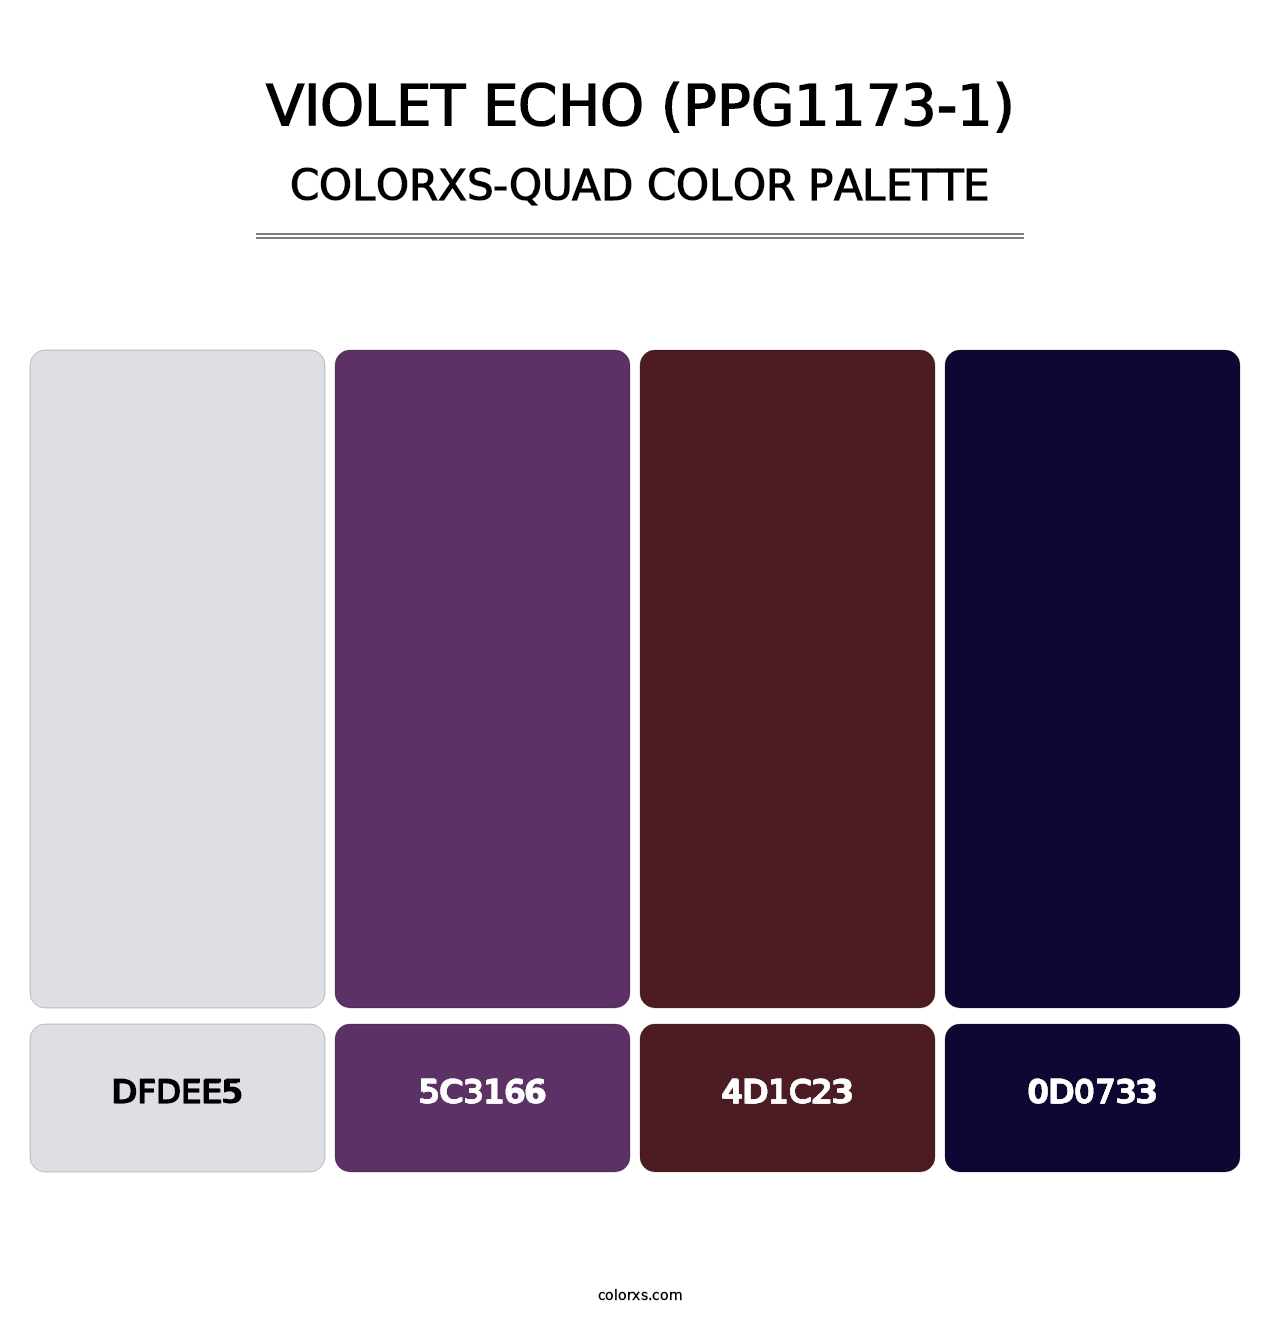 Violet Echo (PPG1173-1) - Colorxs Quad Palette